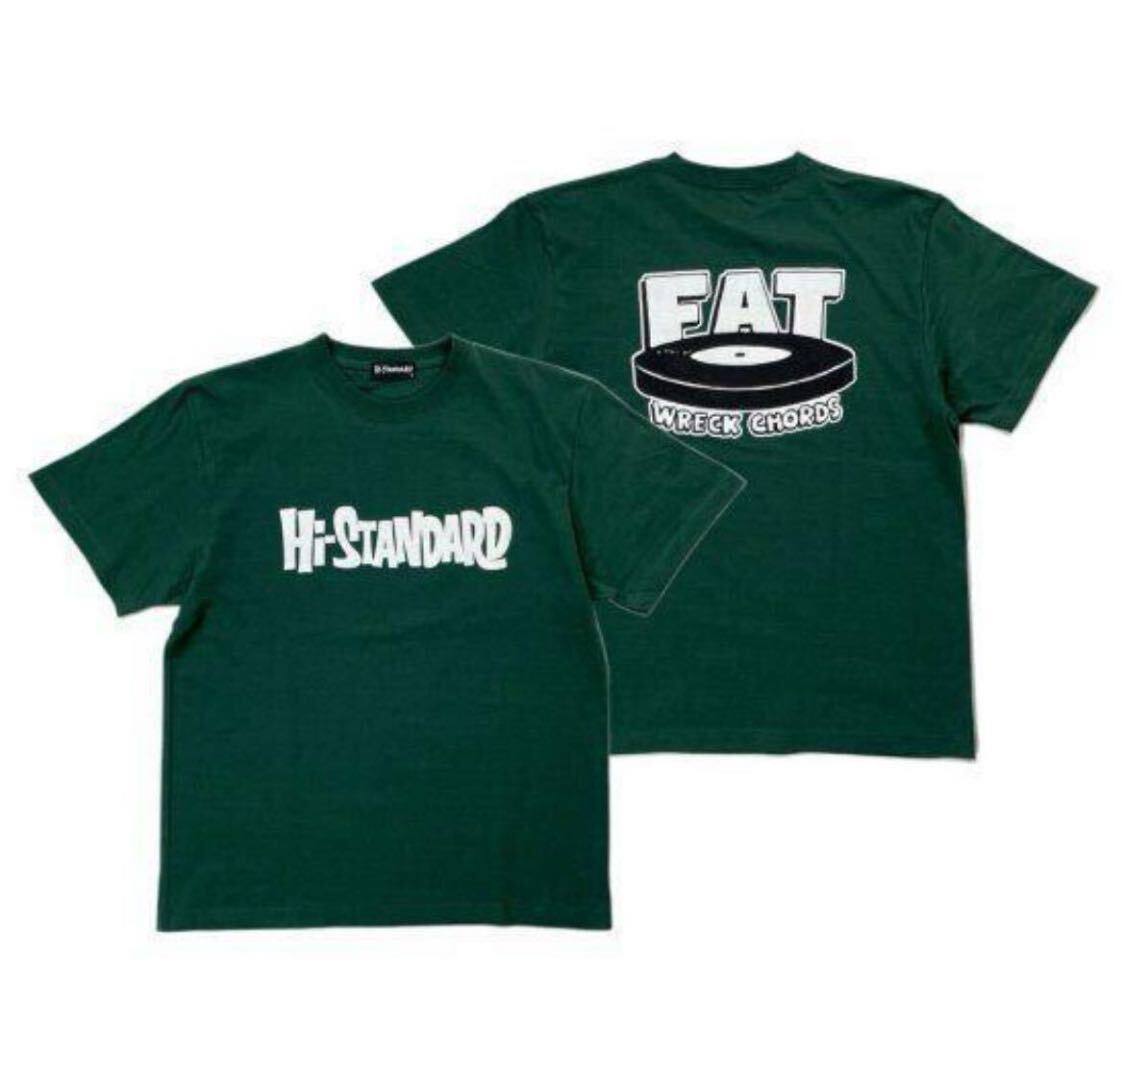 新品 Hi-STANDARD Tシャツ XL 緑 ハイスタ kenyokoyama pizza of death 横山健 fatwreck NOFX 送料無料の画像2